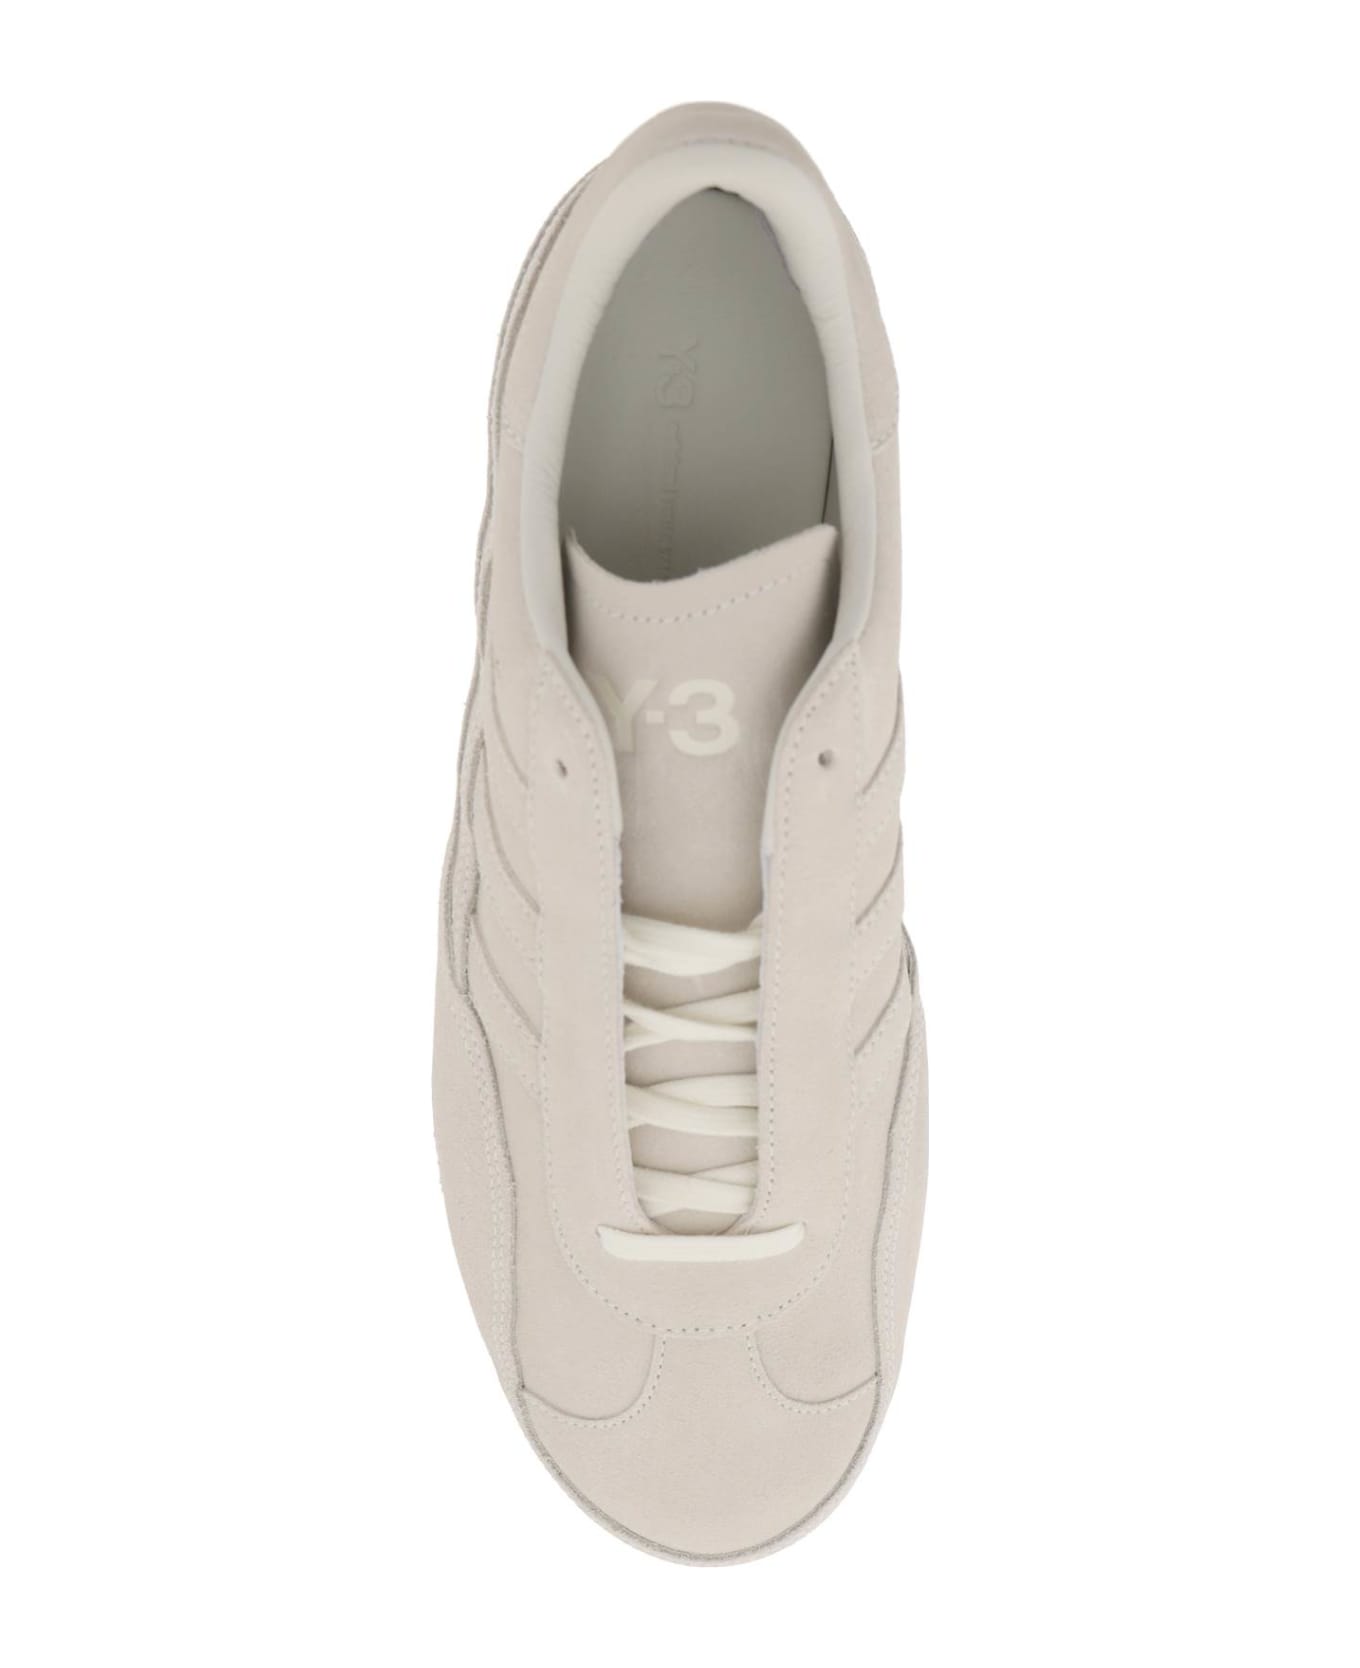 Y-3 Gazzelle Sneakers - OWHITE OWHITE OWHITE (Beige)